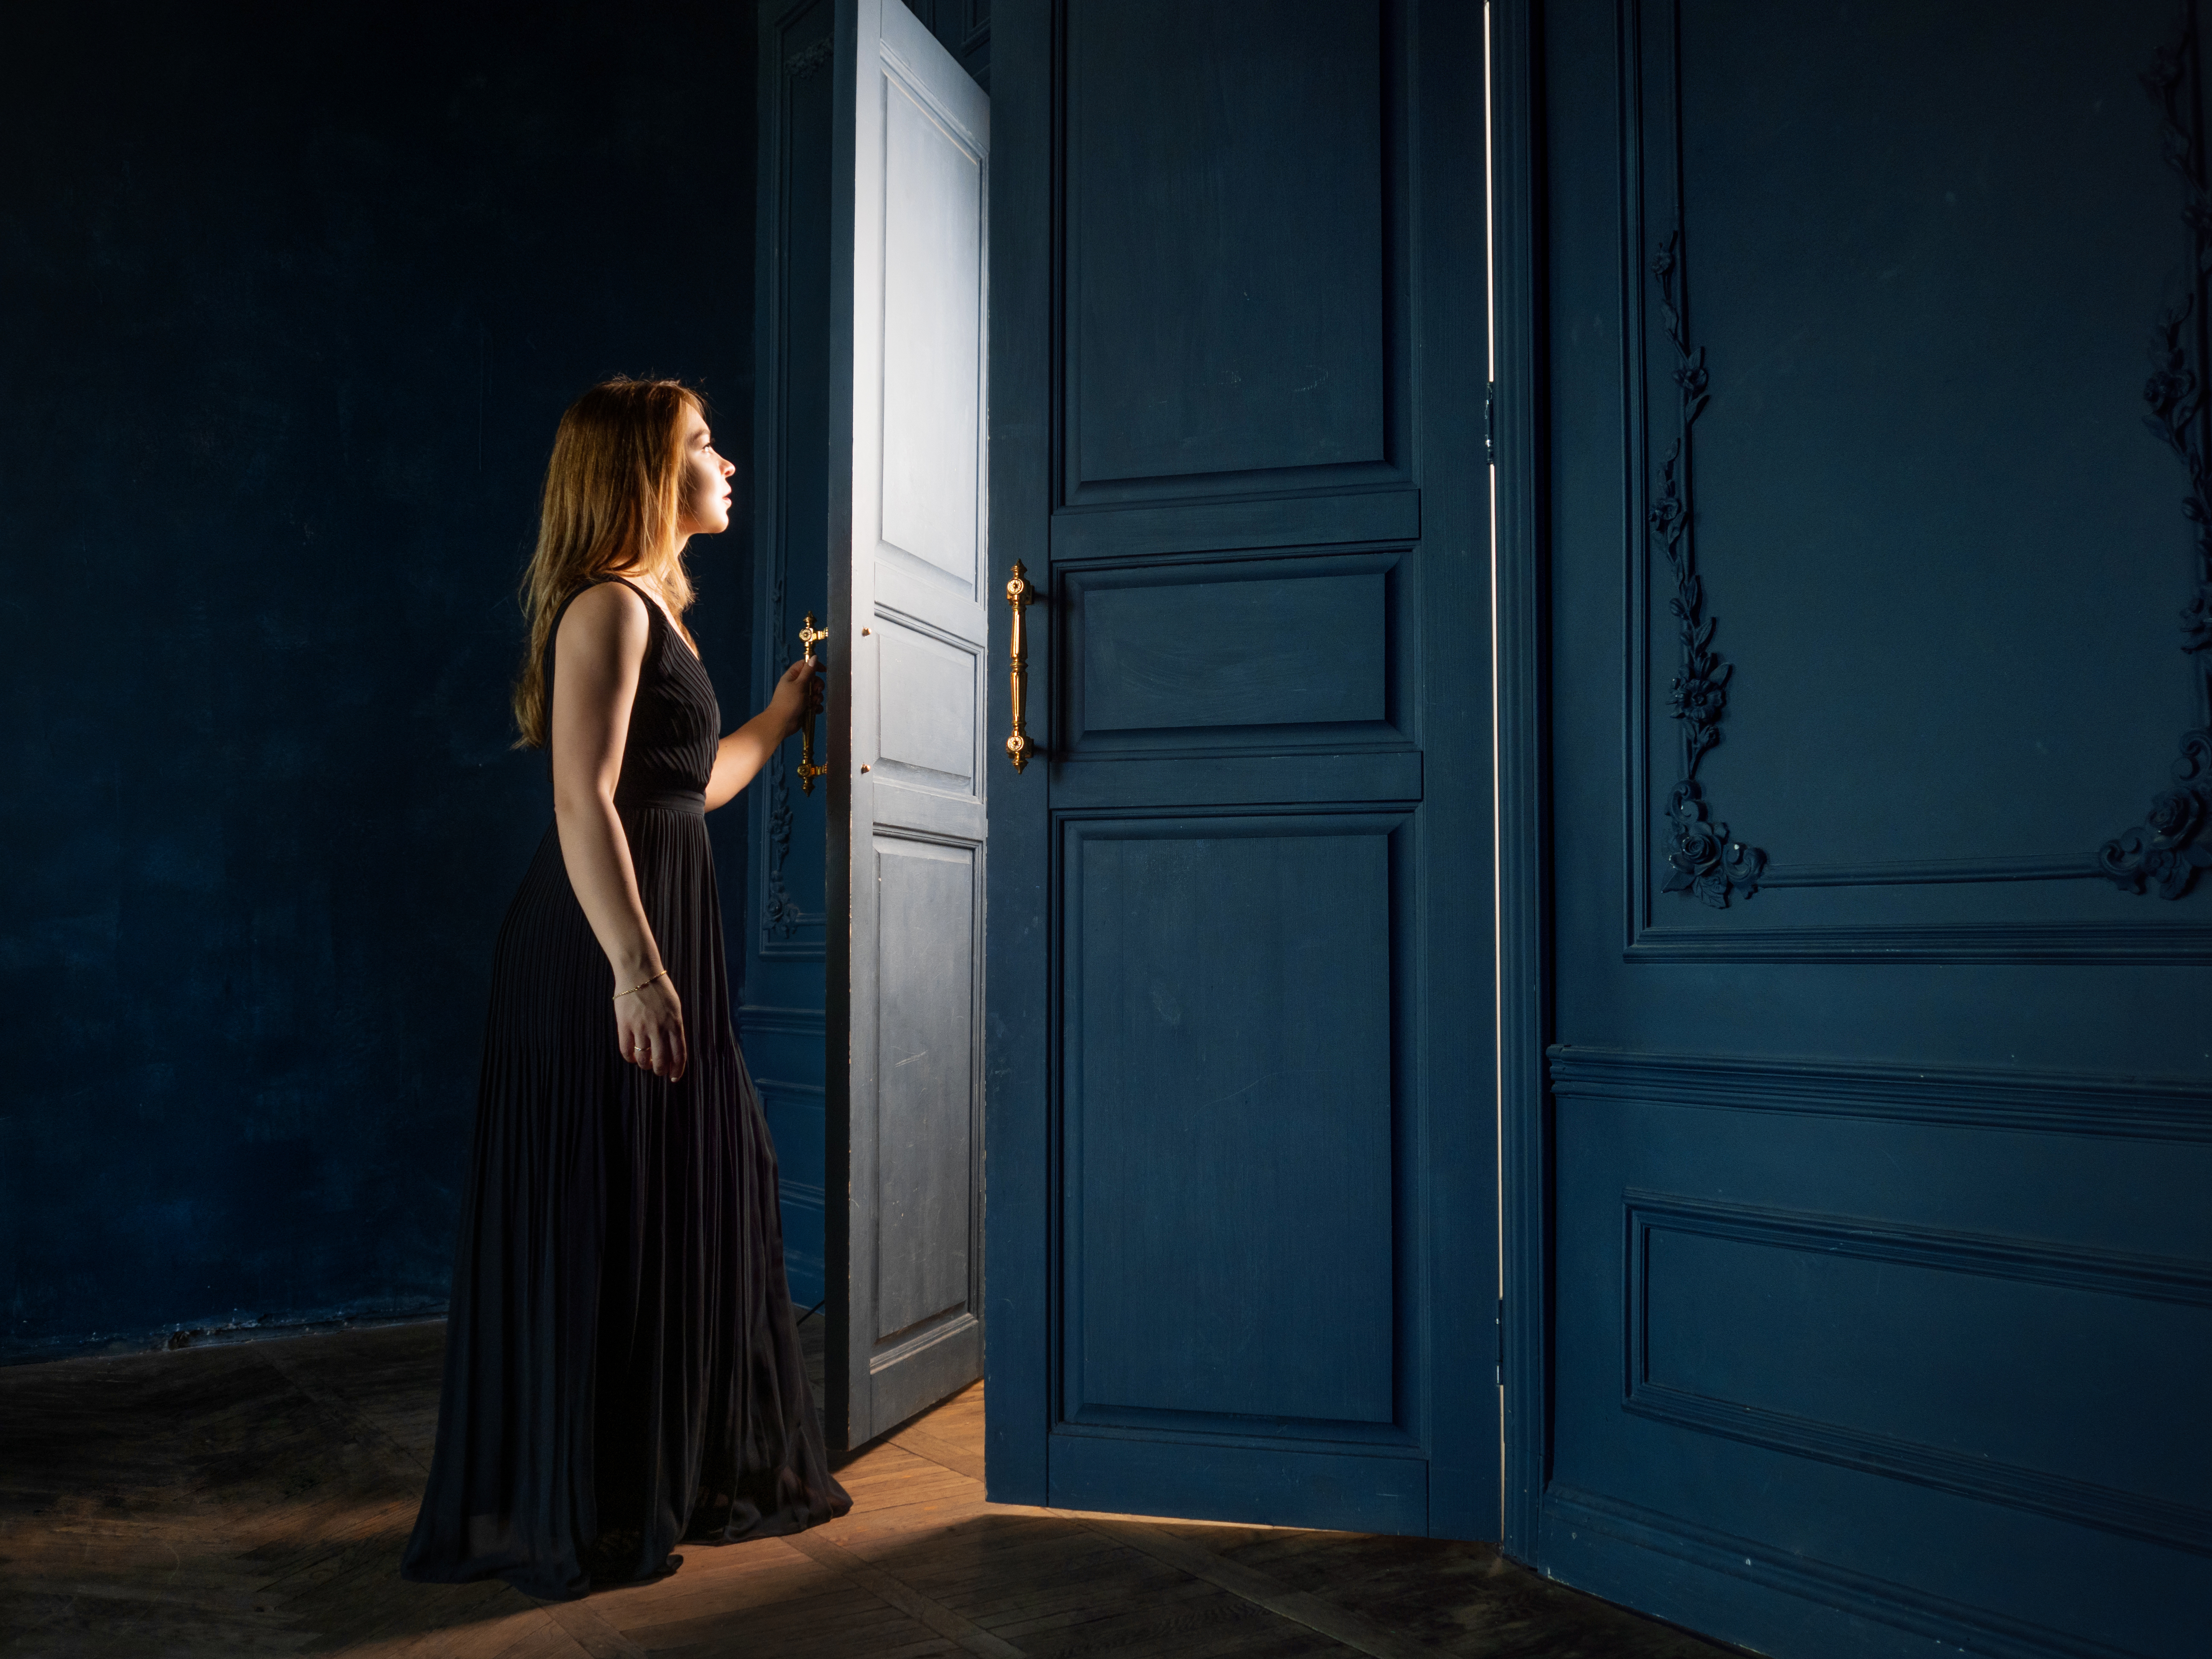 Femme ouvrant la porte d'une pièce | Source : Shutterstock